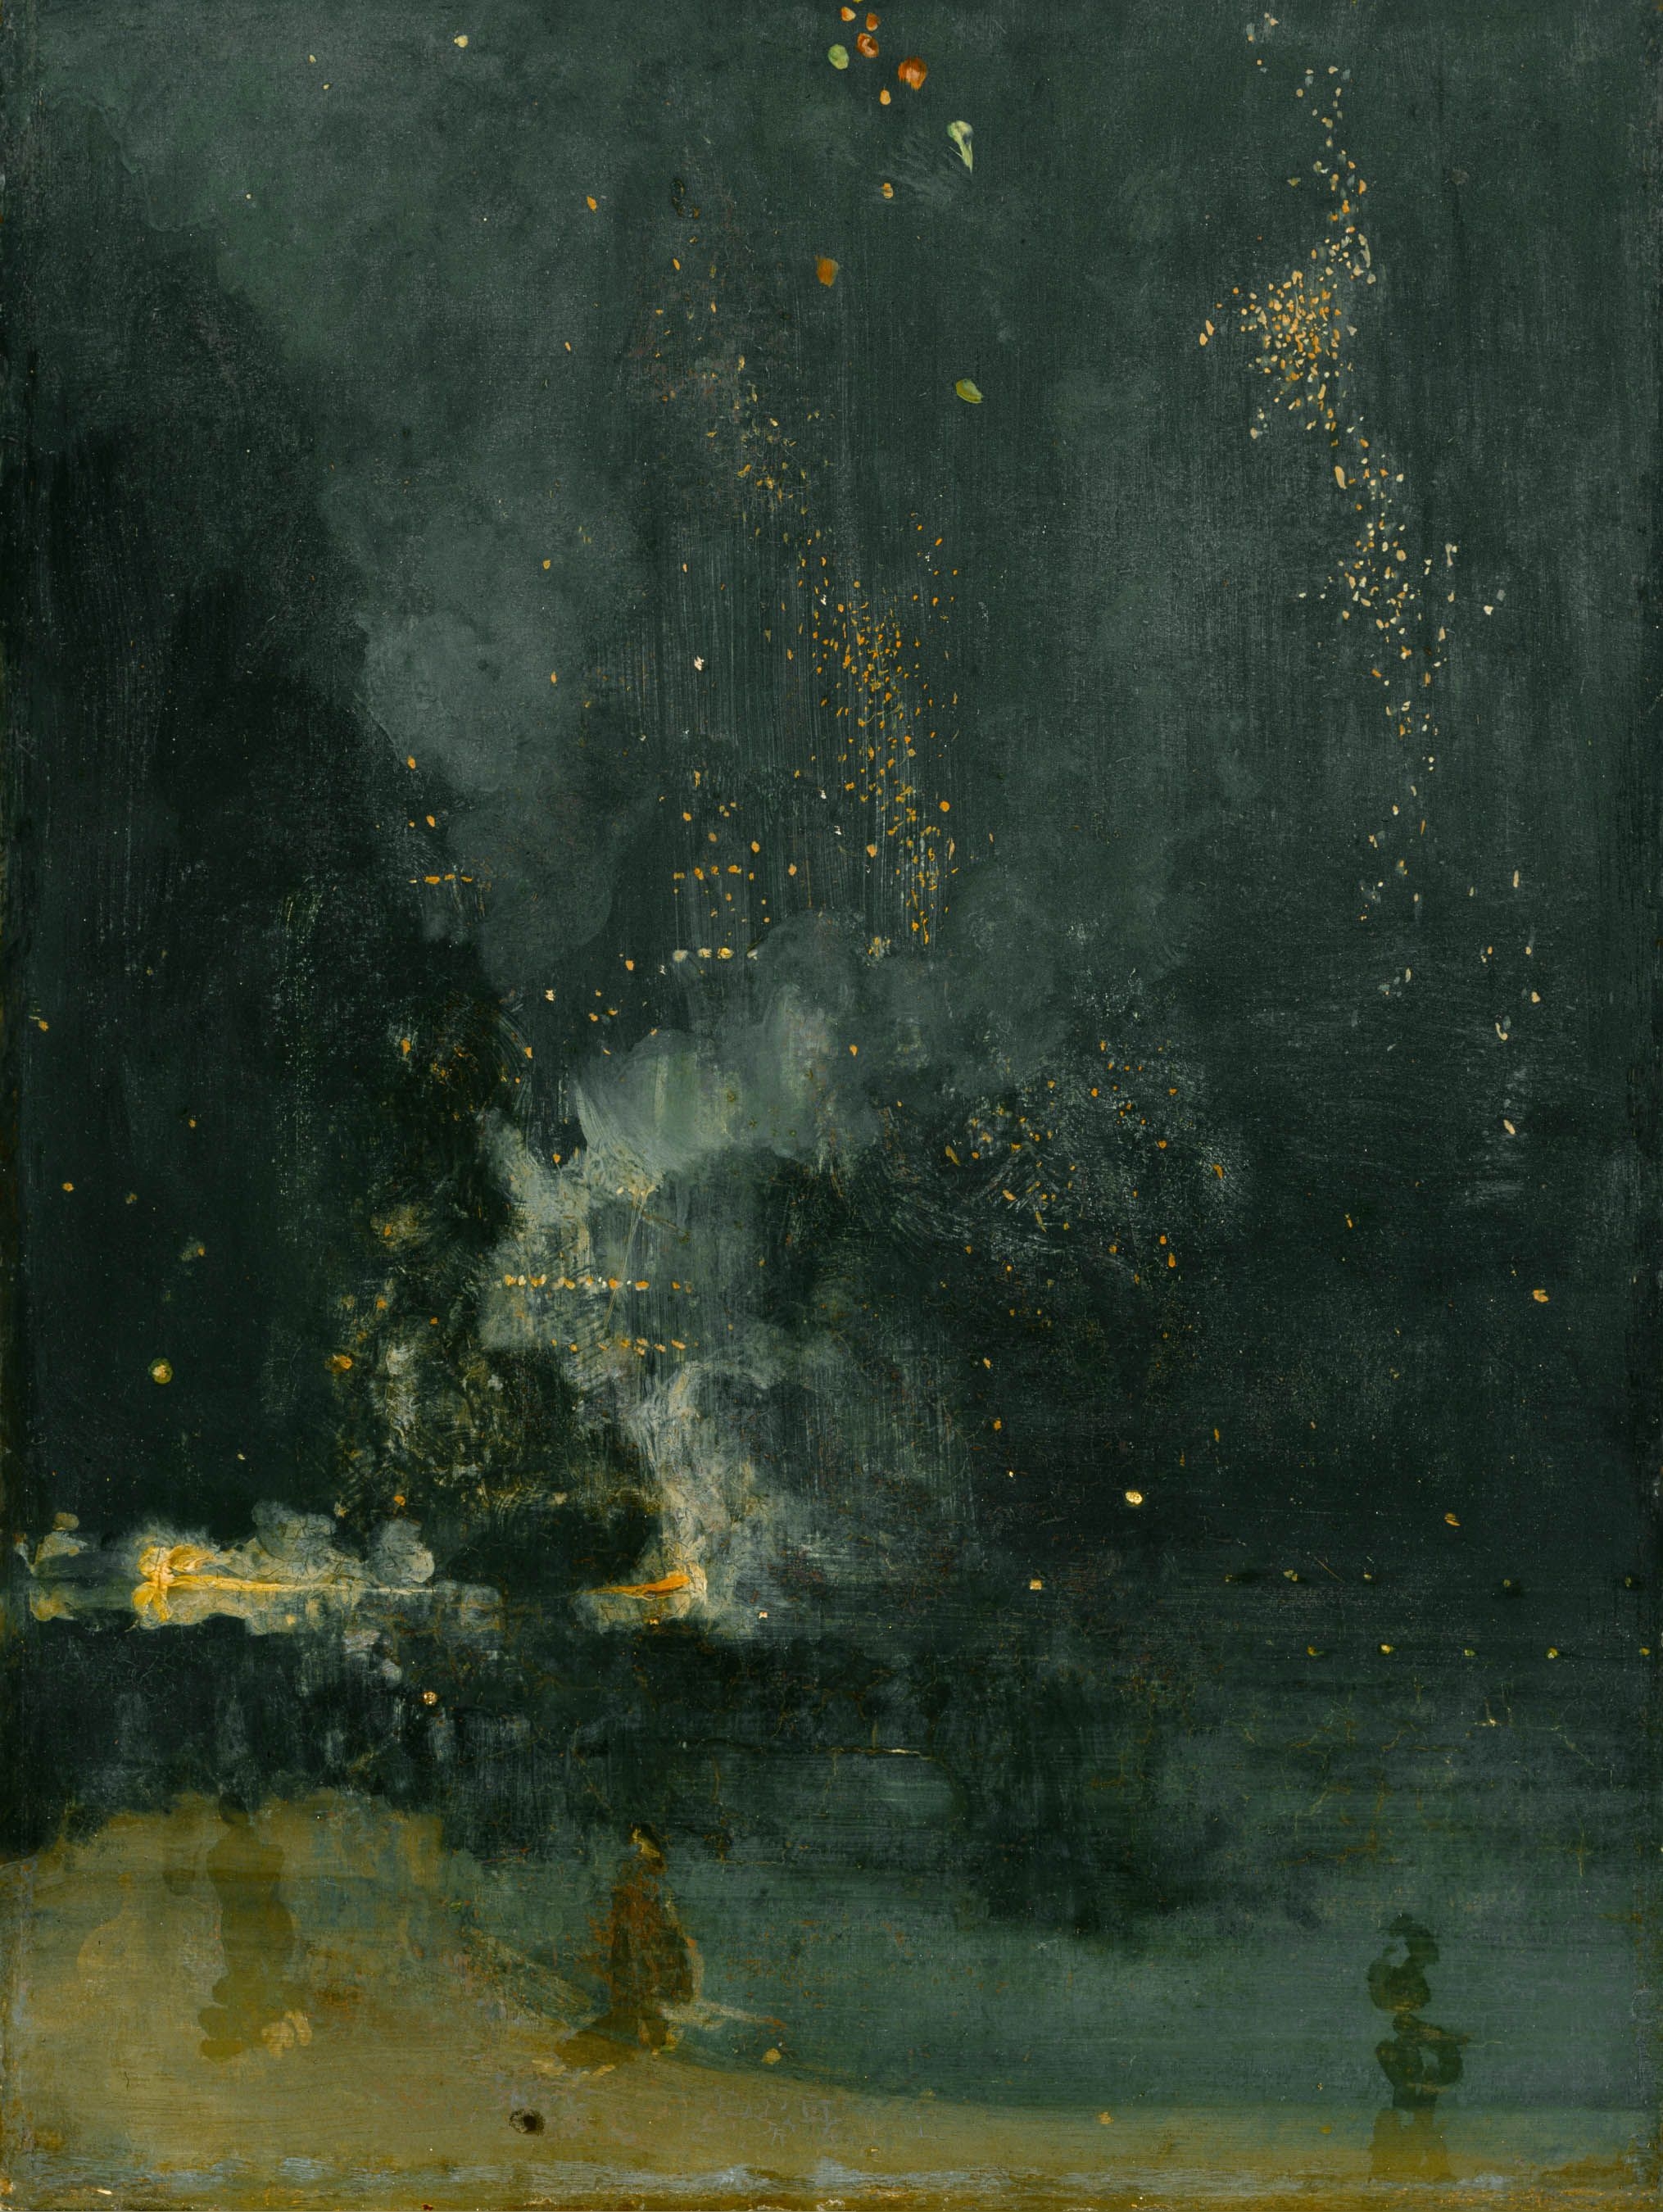 Nocturnă în negru și aur, racheta care cade by James Abbott McNeill Whistler - 1875 - 60.3 × 46.7 cm 